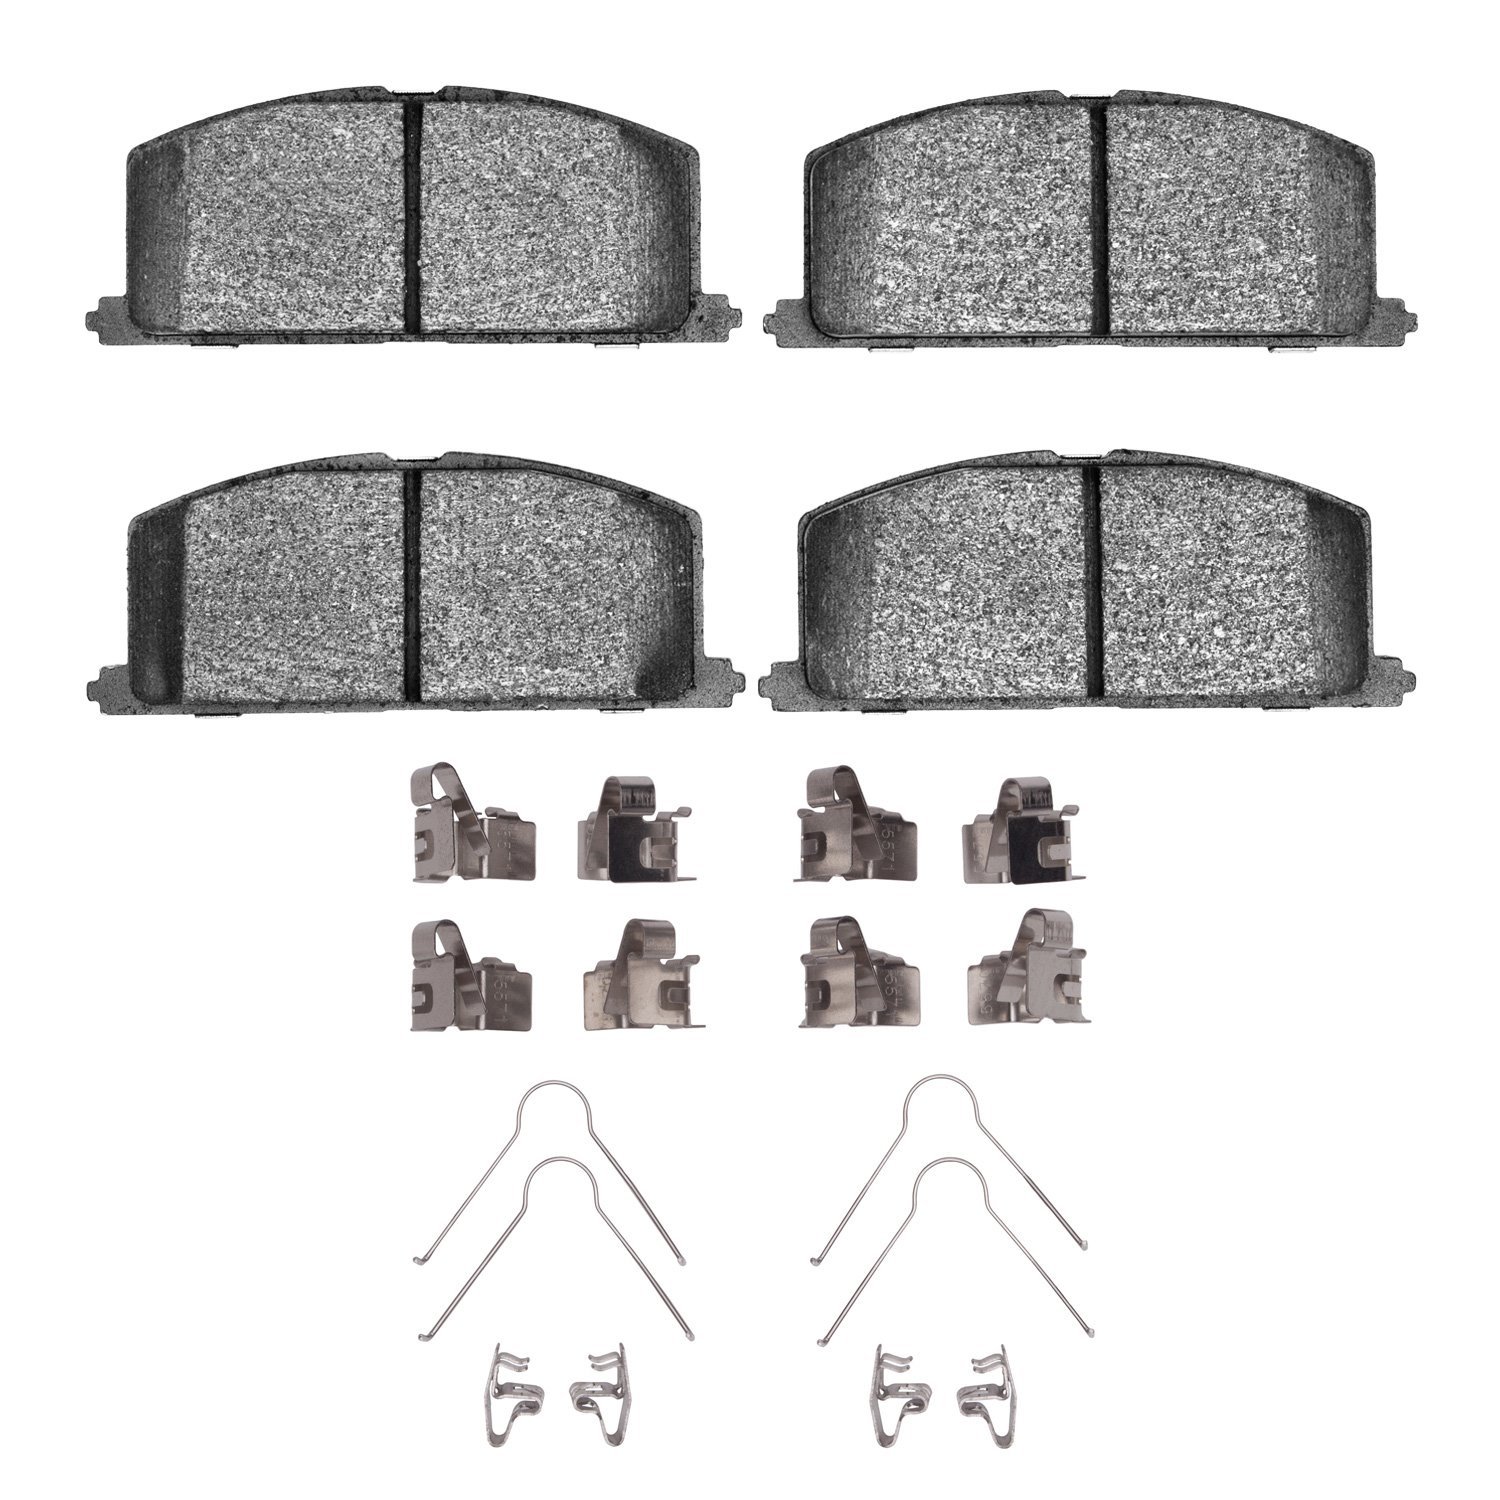 Ceramic Brake Pads & Hardware Kit, 1983-1999 Fits Multiple Makes/Models, Position: Front